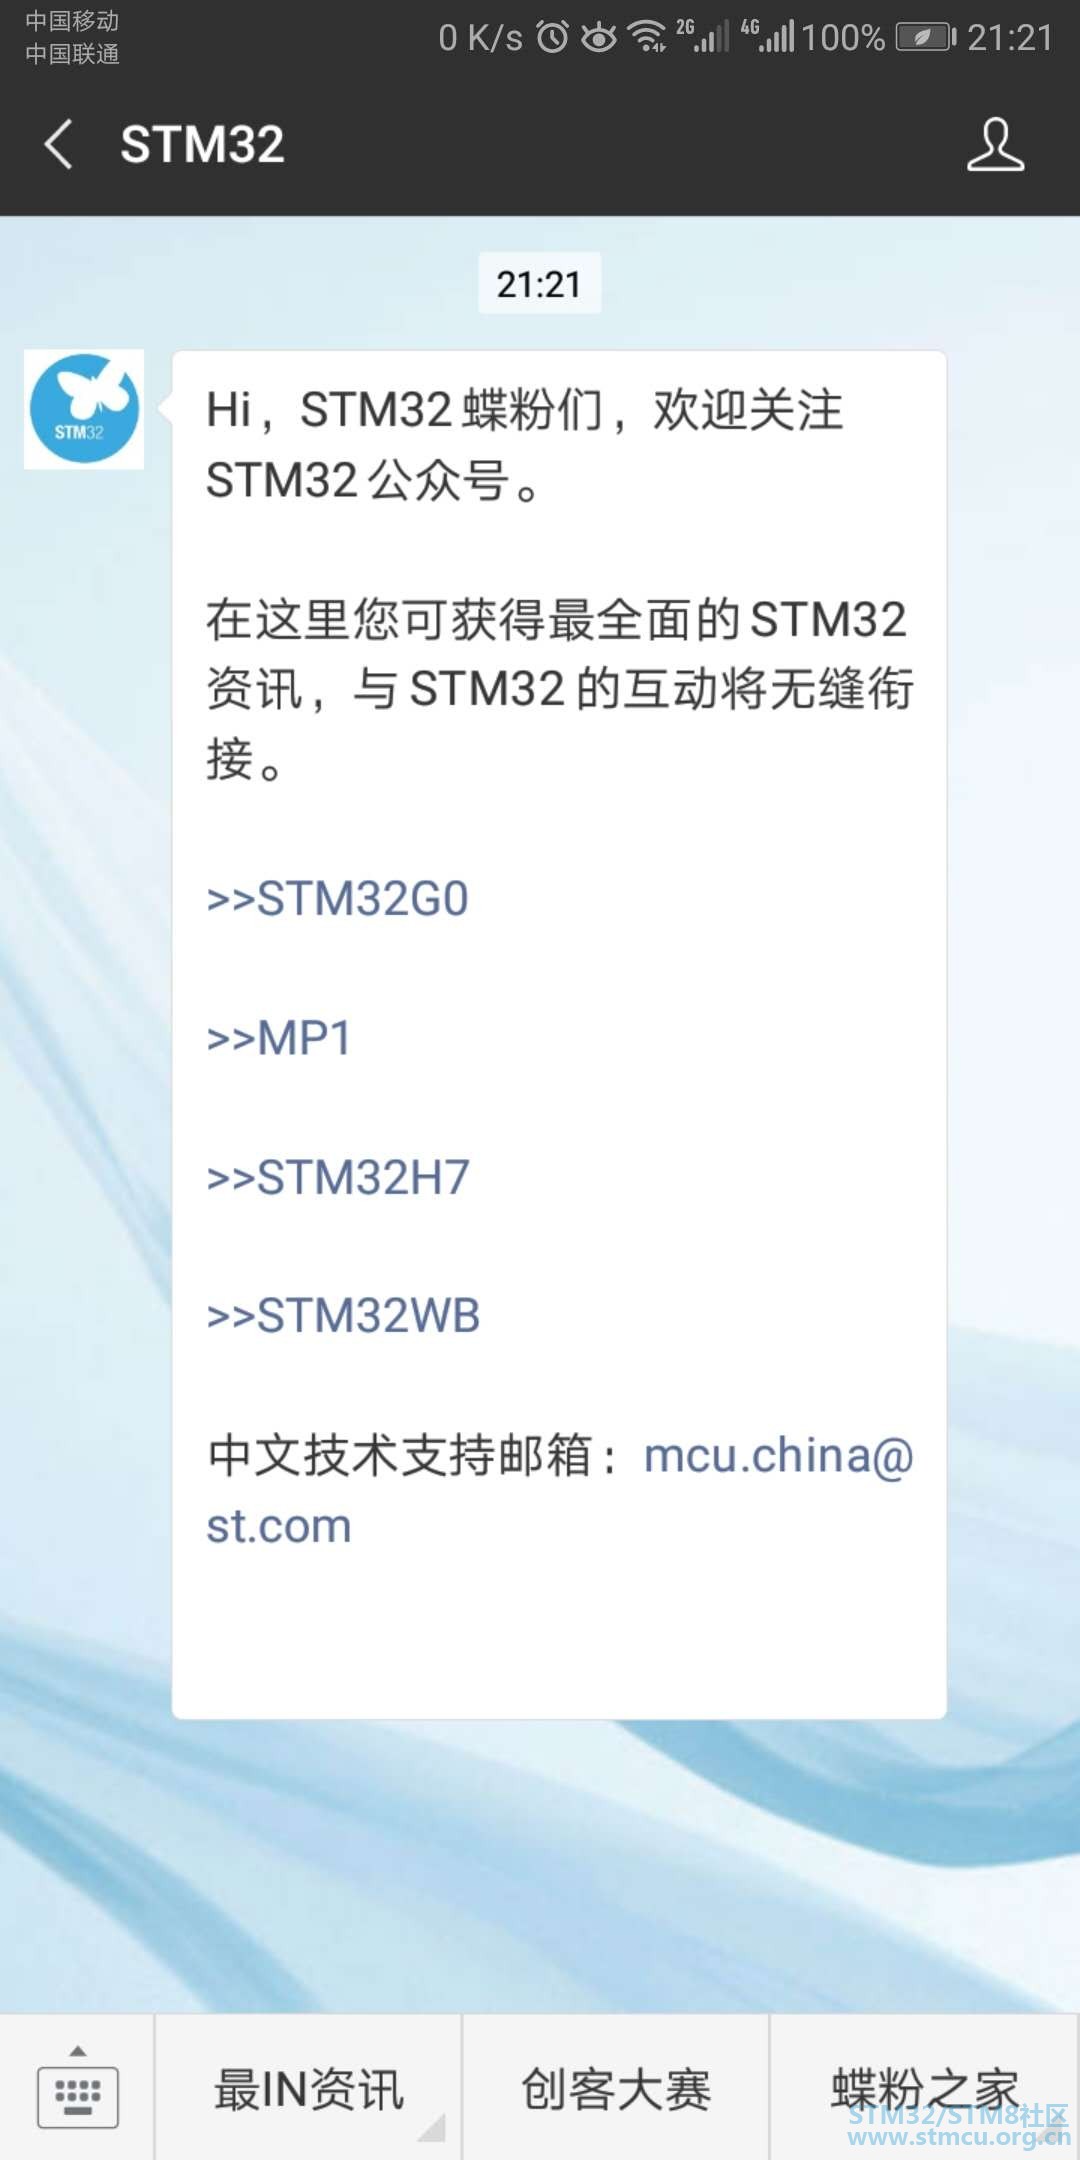 STM32.jpg